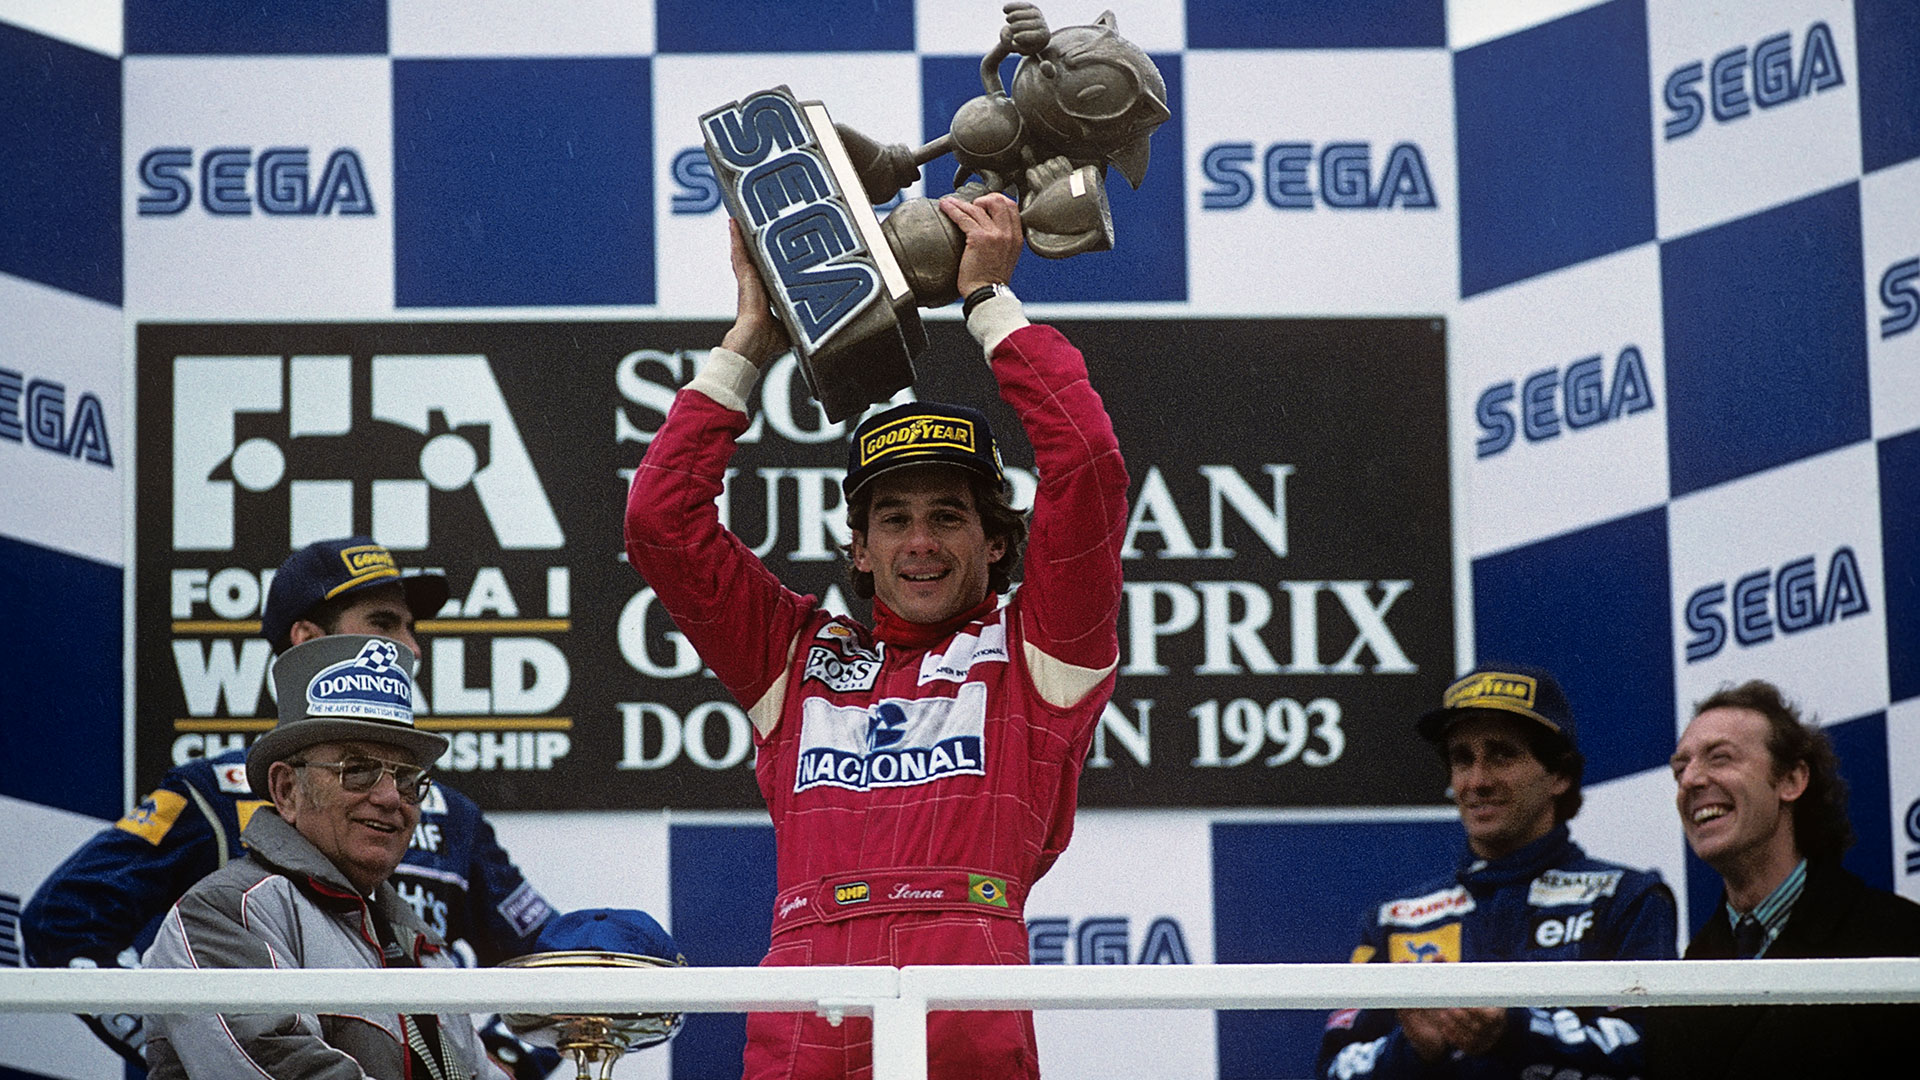 Ayrton Senna en el podio inglés que completaron Damon Hill y Alain Prost (Paul-Henri Cahier/Getty Images)